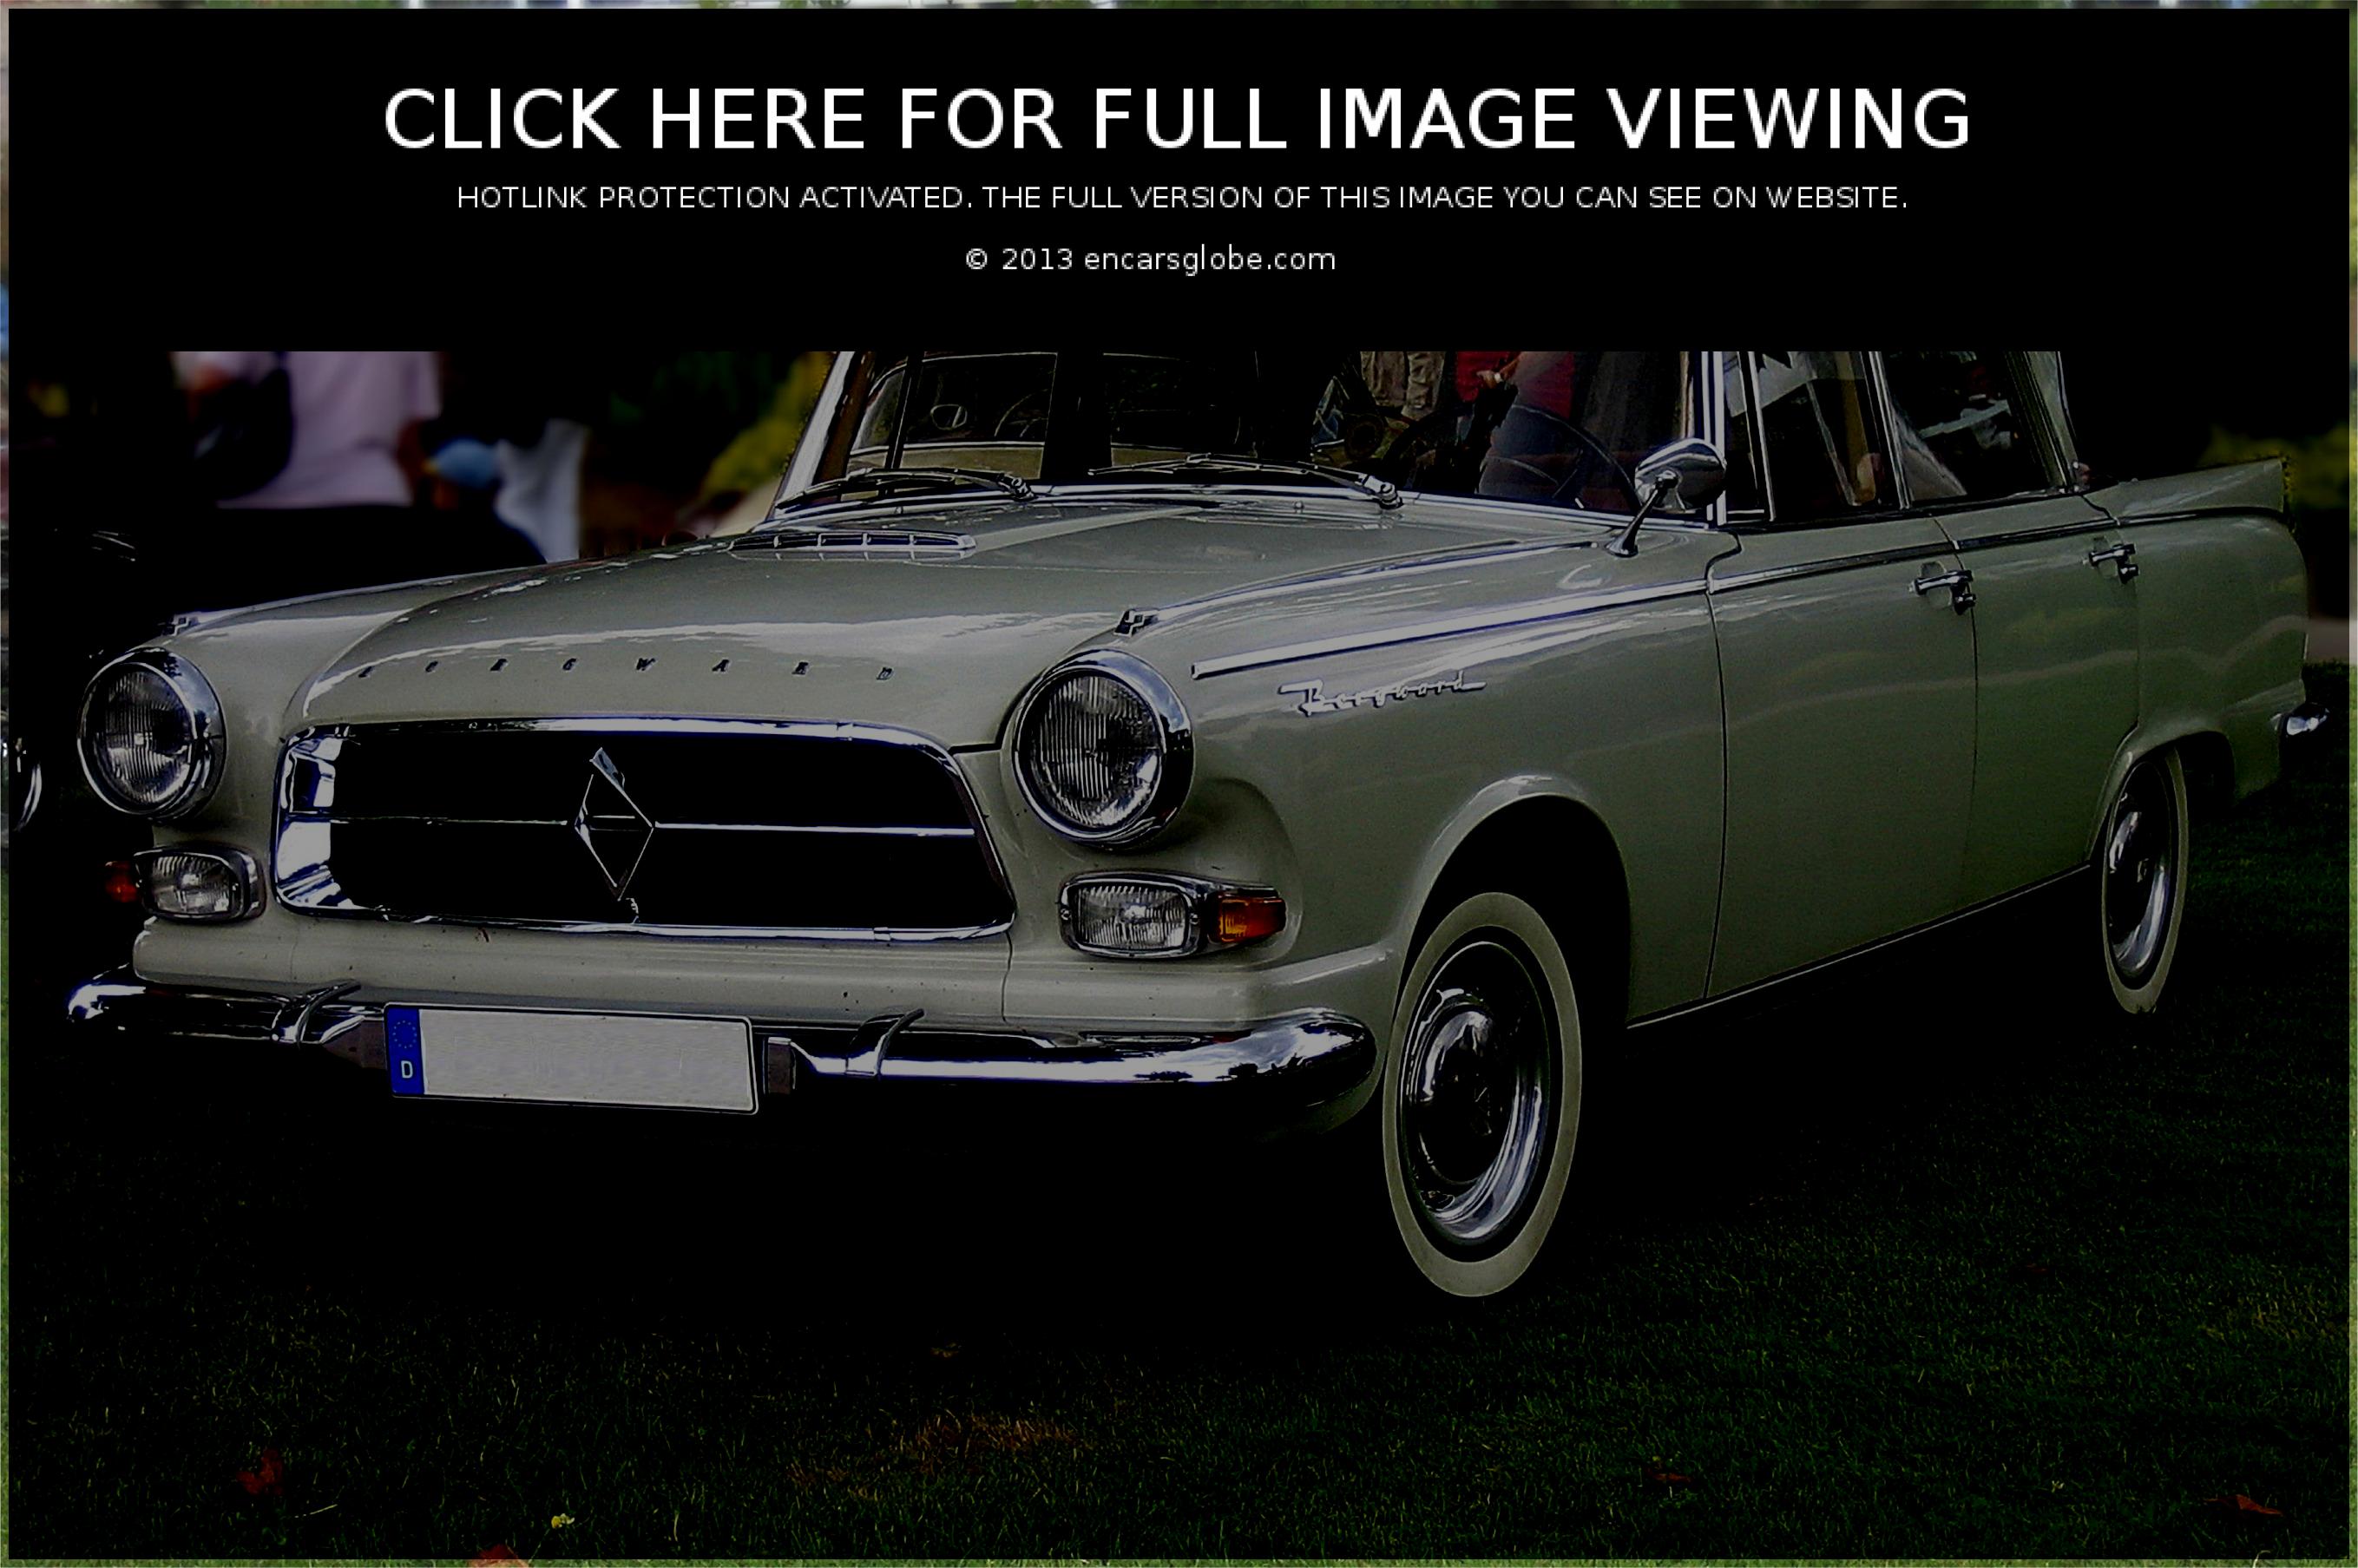 Gallery of all models of Borgward: Borgward 230 GL, Borgward ...